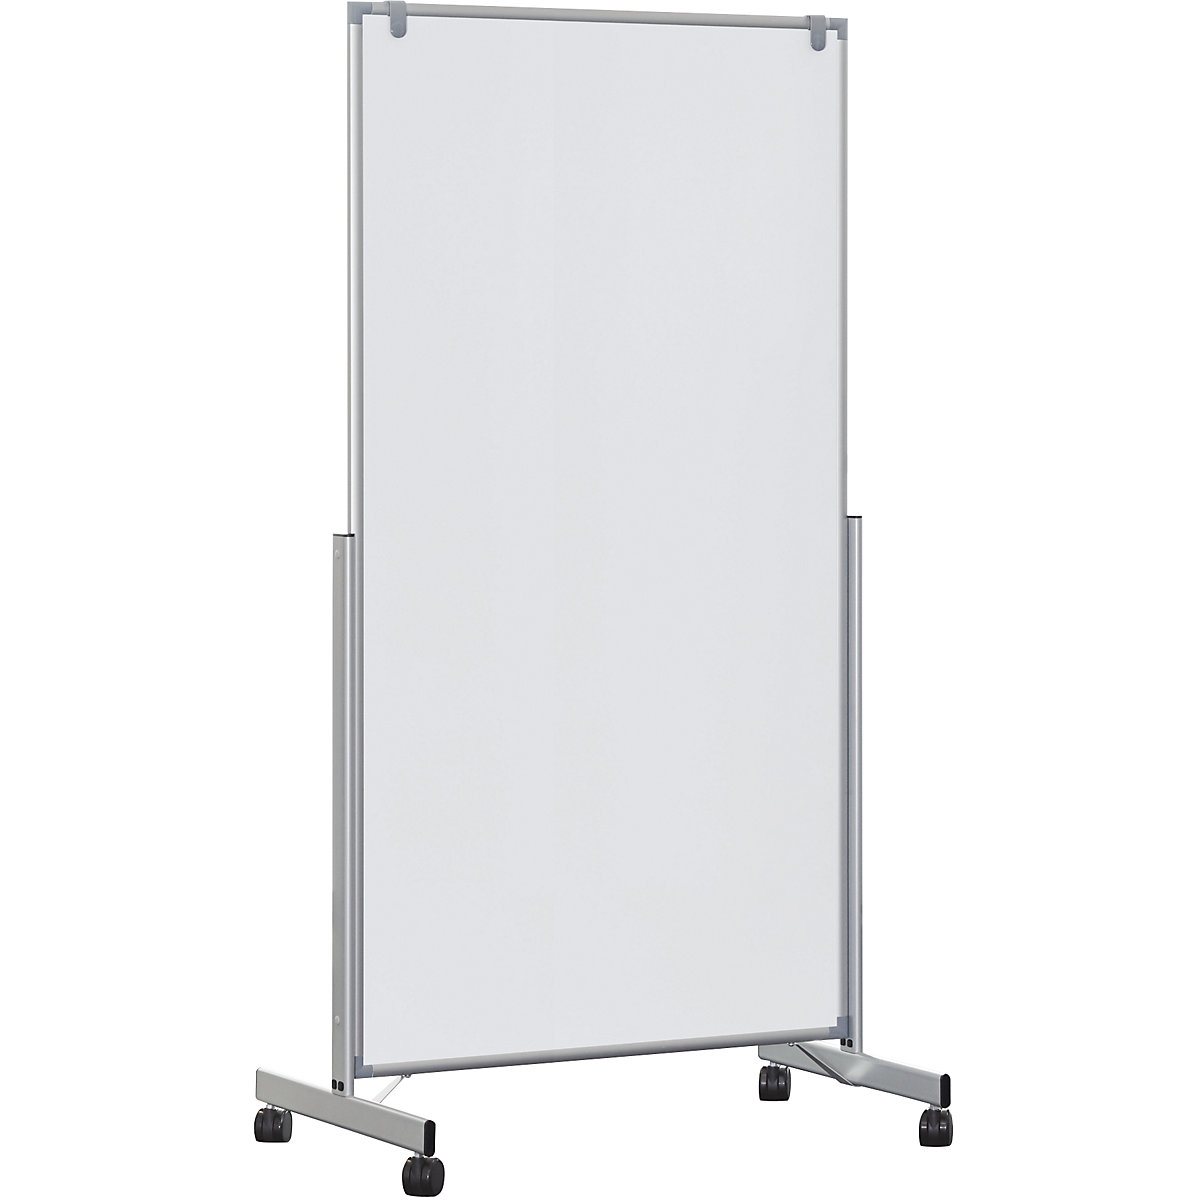 MAULpro easy2move mobile whiteboard – MAUL, HxD 1965 x 640 mm, aluminium silver, board HxW 1800 x 1000 mm-4